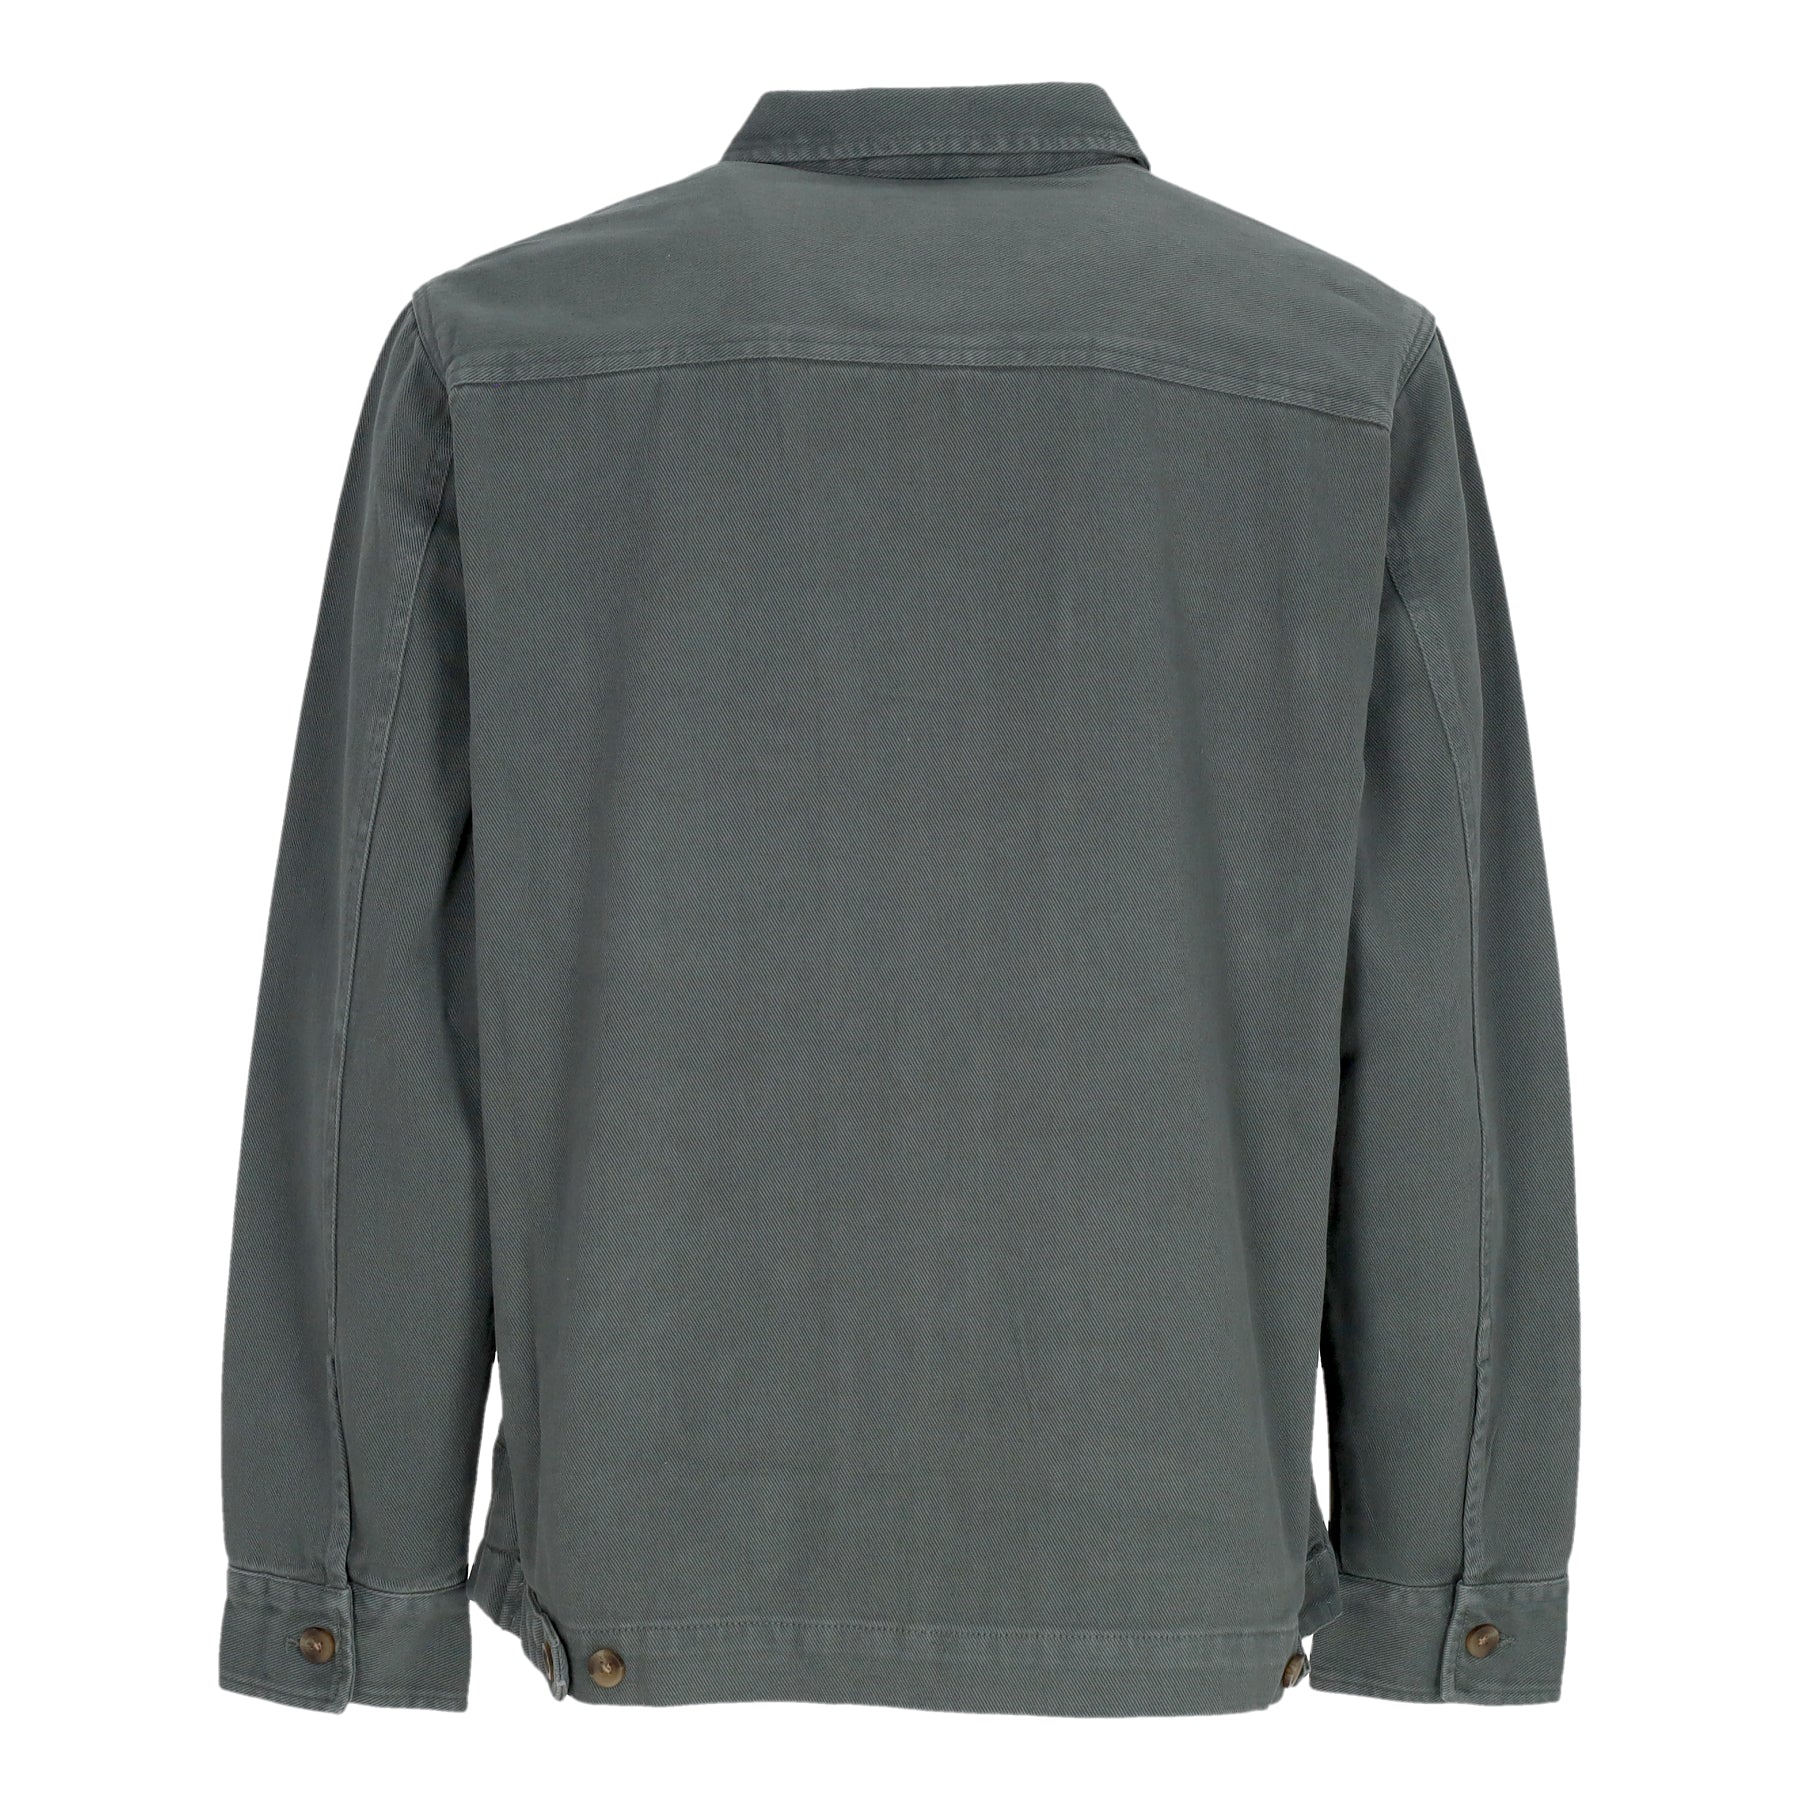 Giubbotto Uomo Nanolo Shirt Jacket Jungle Green 914B122-467